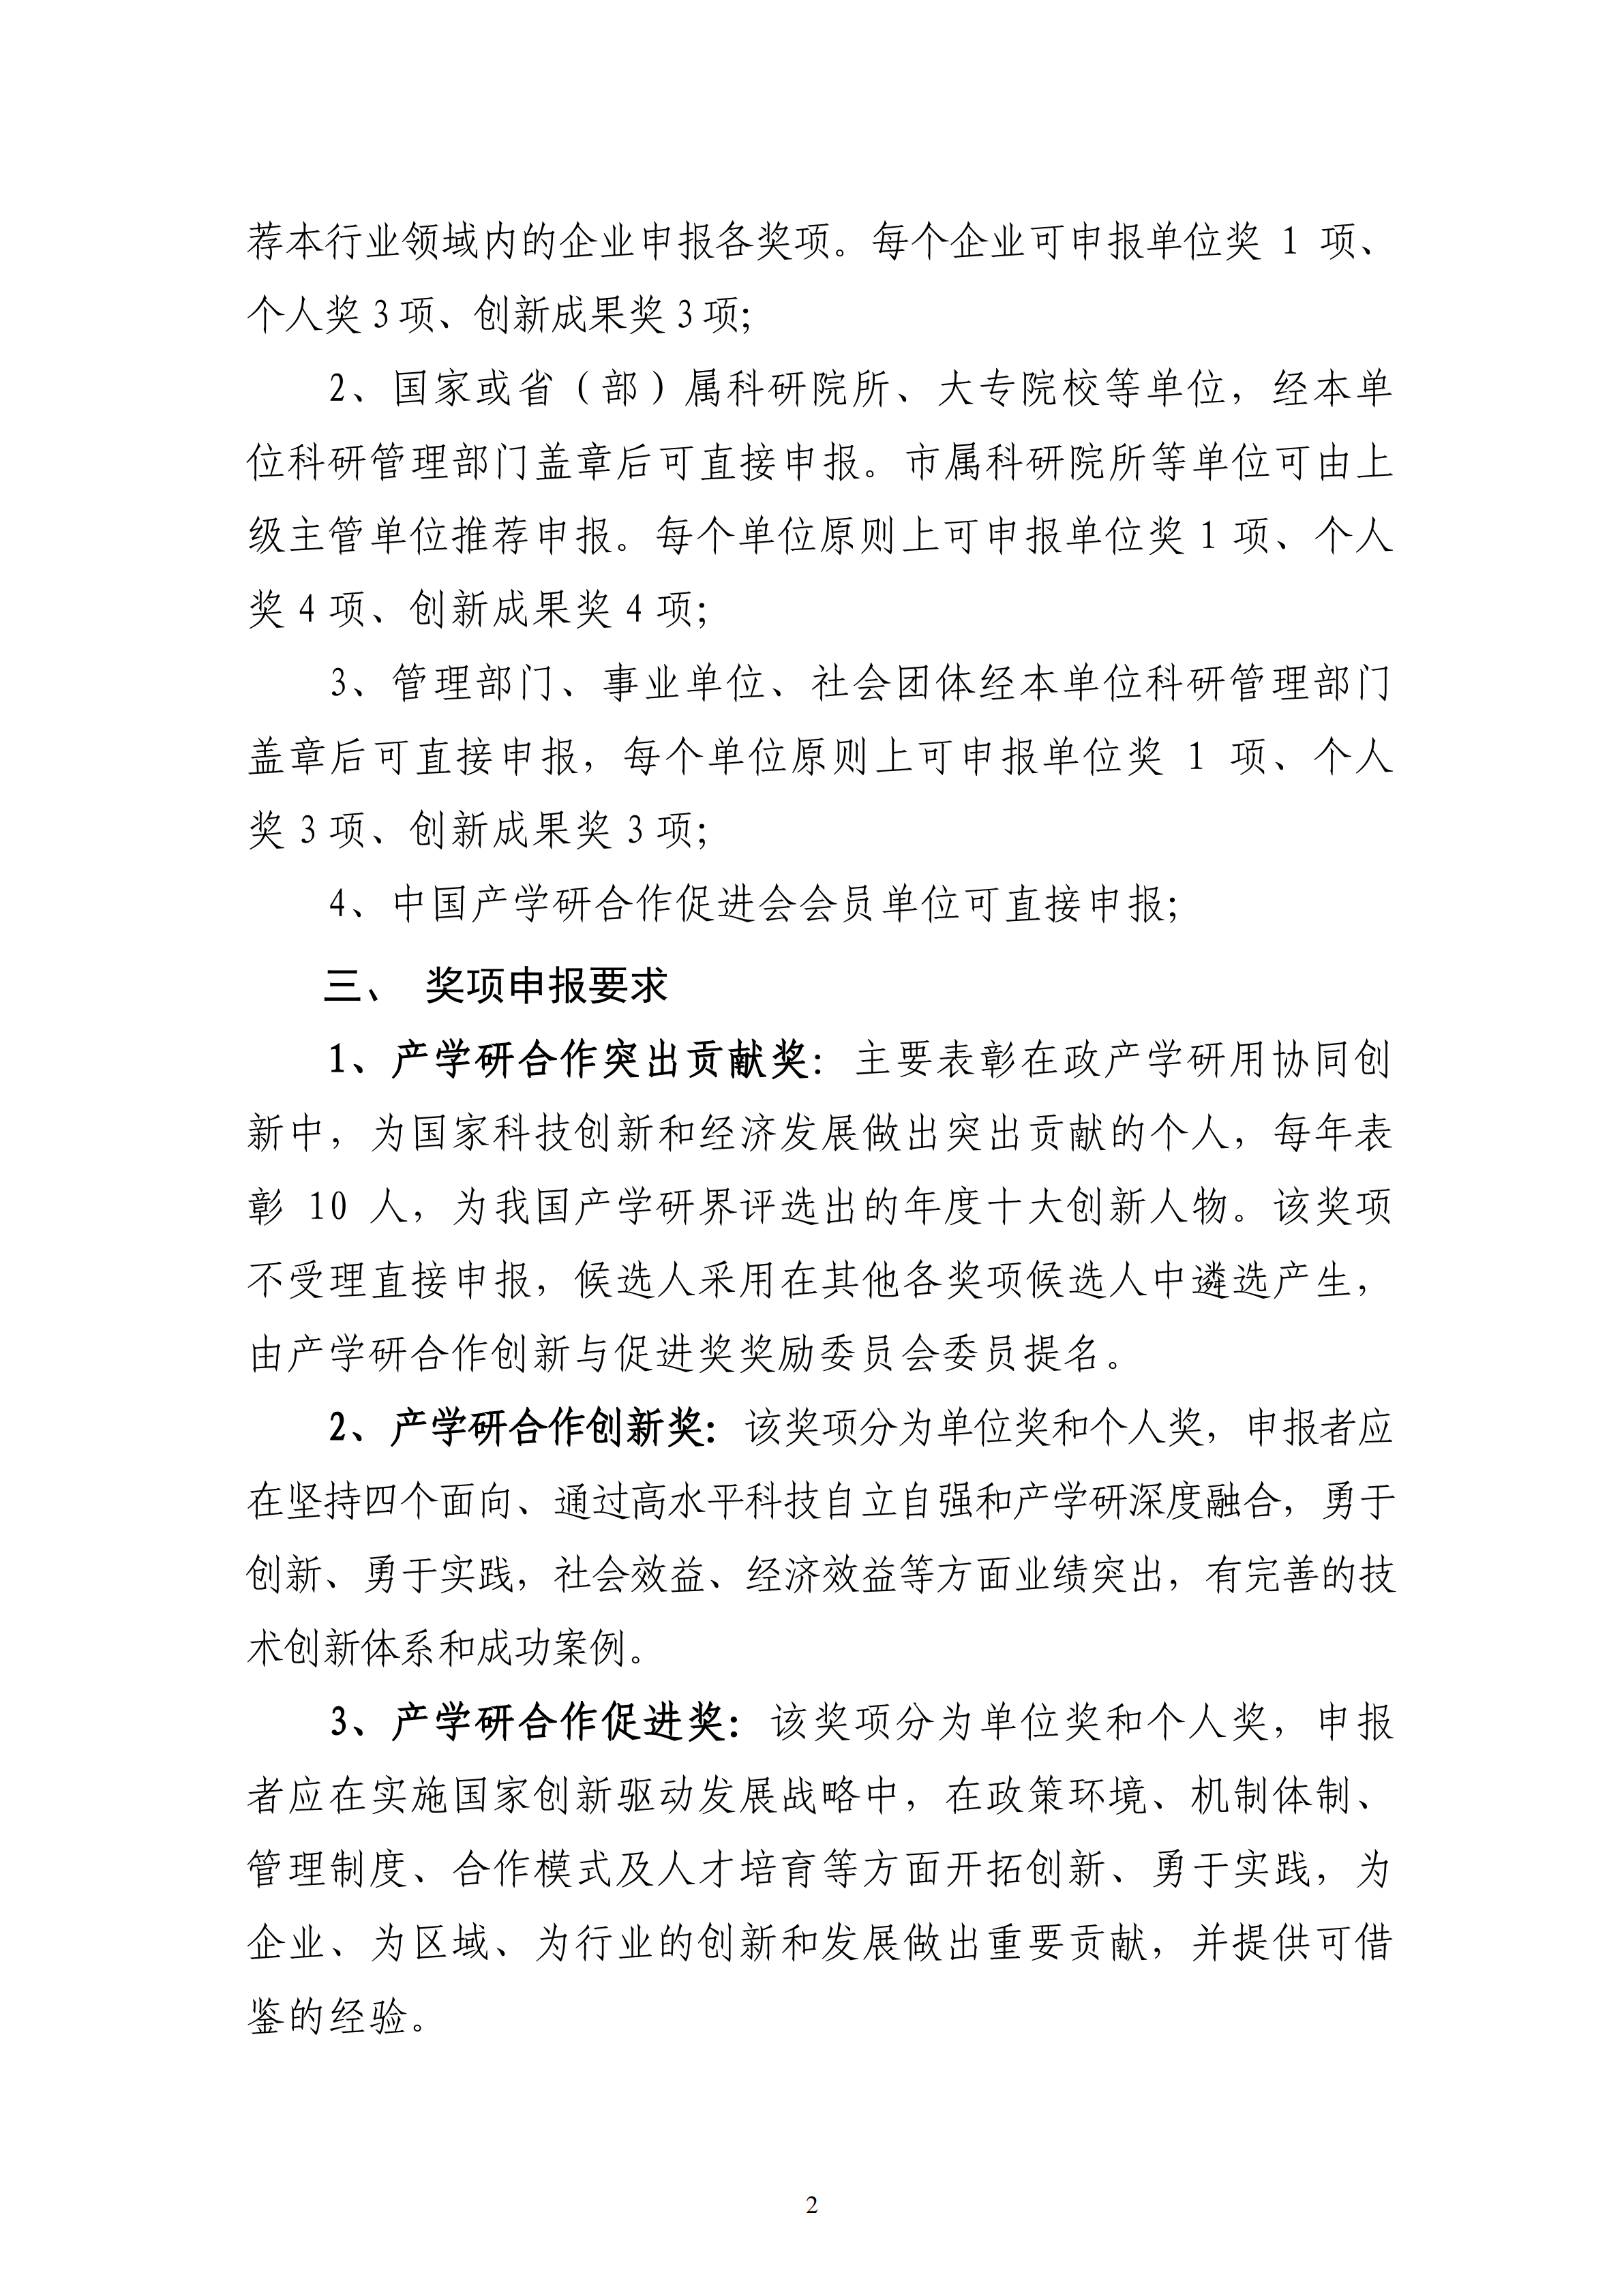 2023年中国产学研合作促进会产学研合作创新与促进奖申报通知_01.png